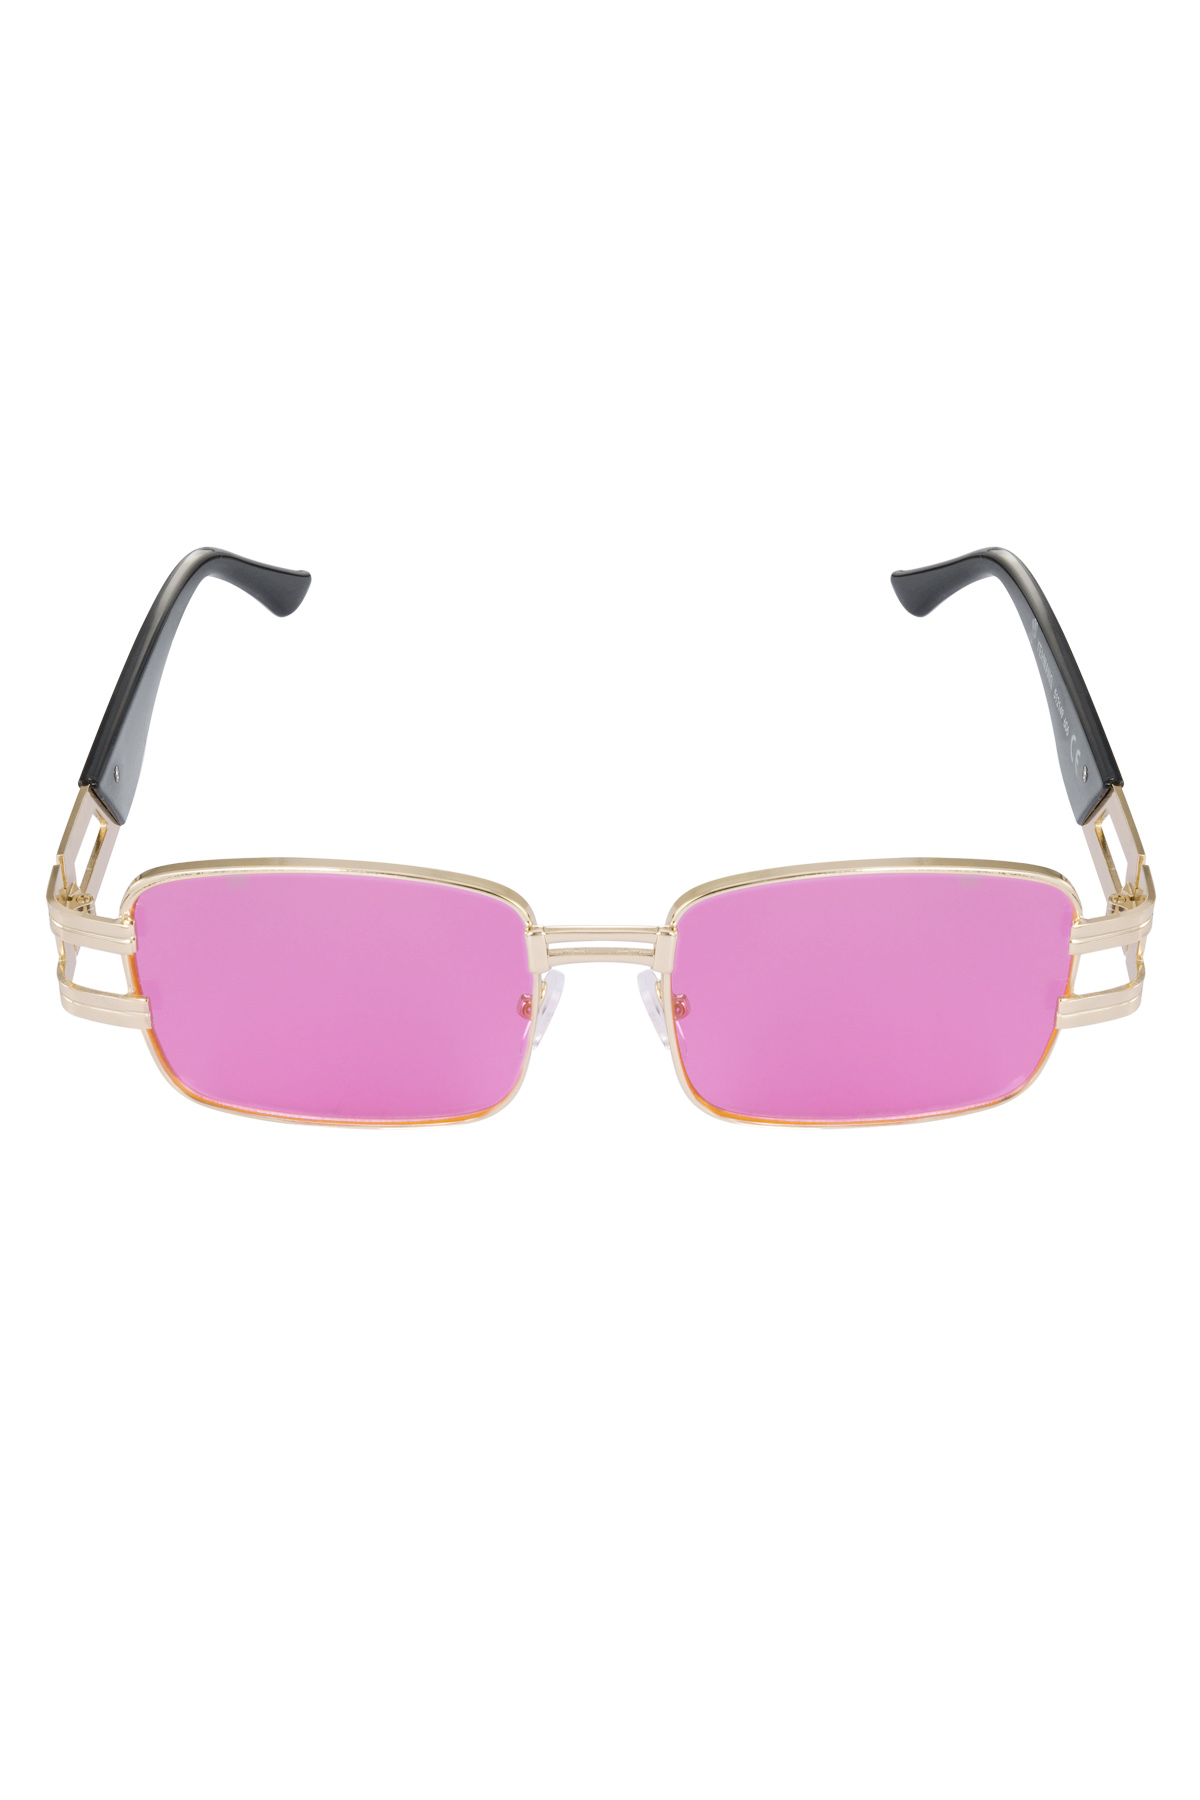 Sunglasses simple metal essential - fuchsia h5 Picture4